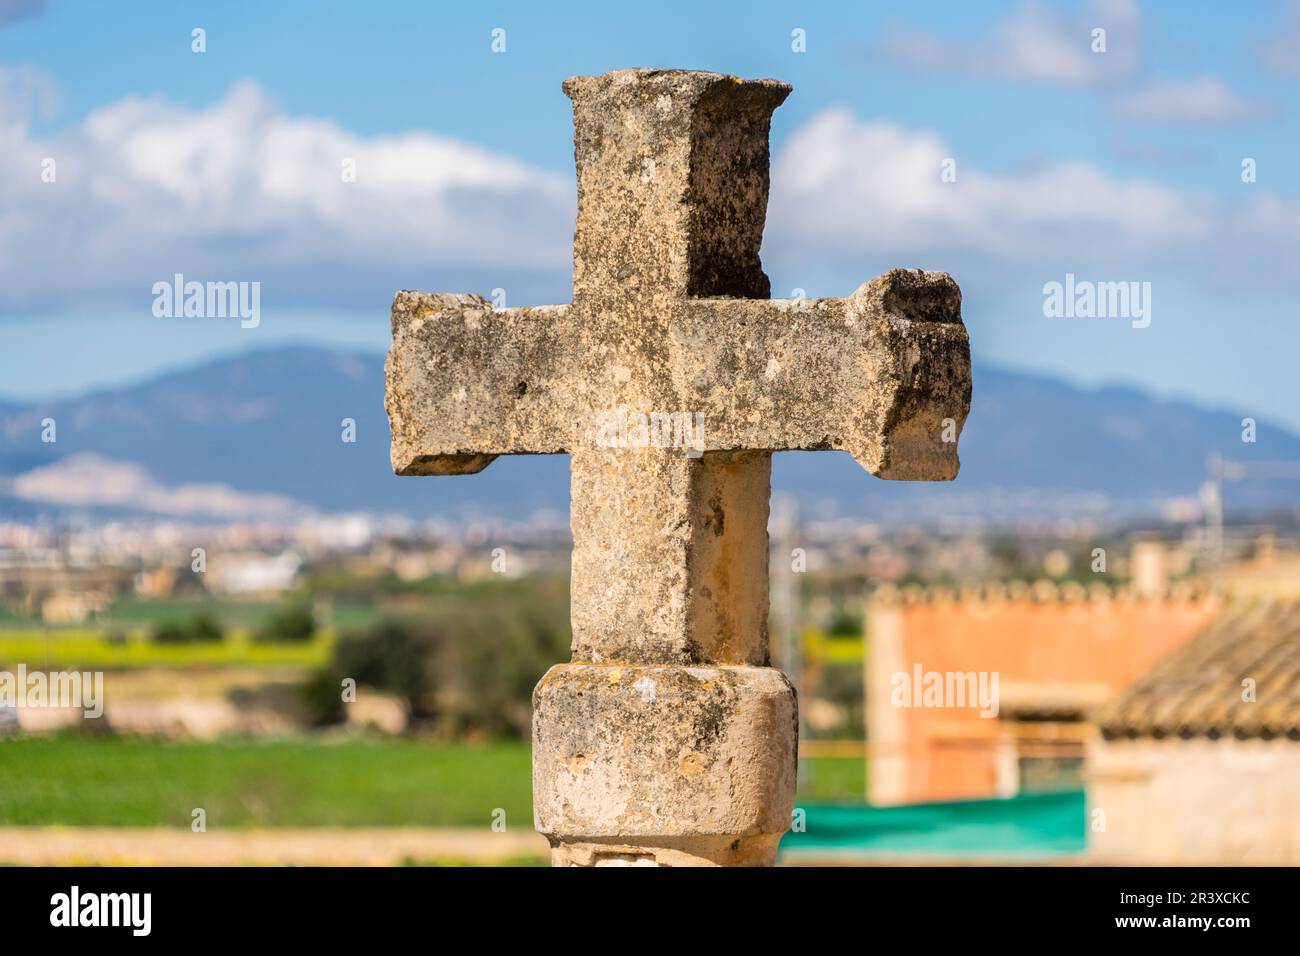 Cruz de Termino, Sant Jordi, Palma, Mallorca, Balearen, Spanien. Stockfoto